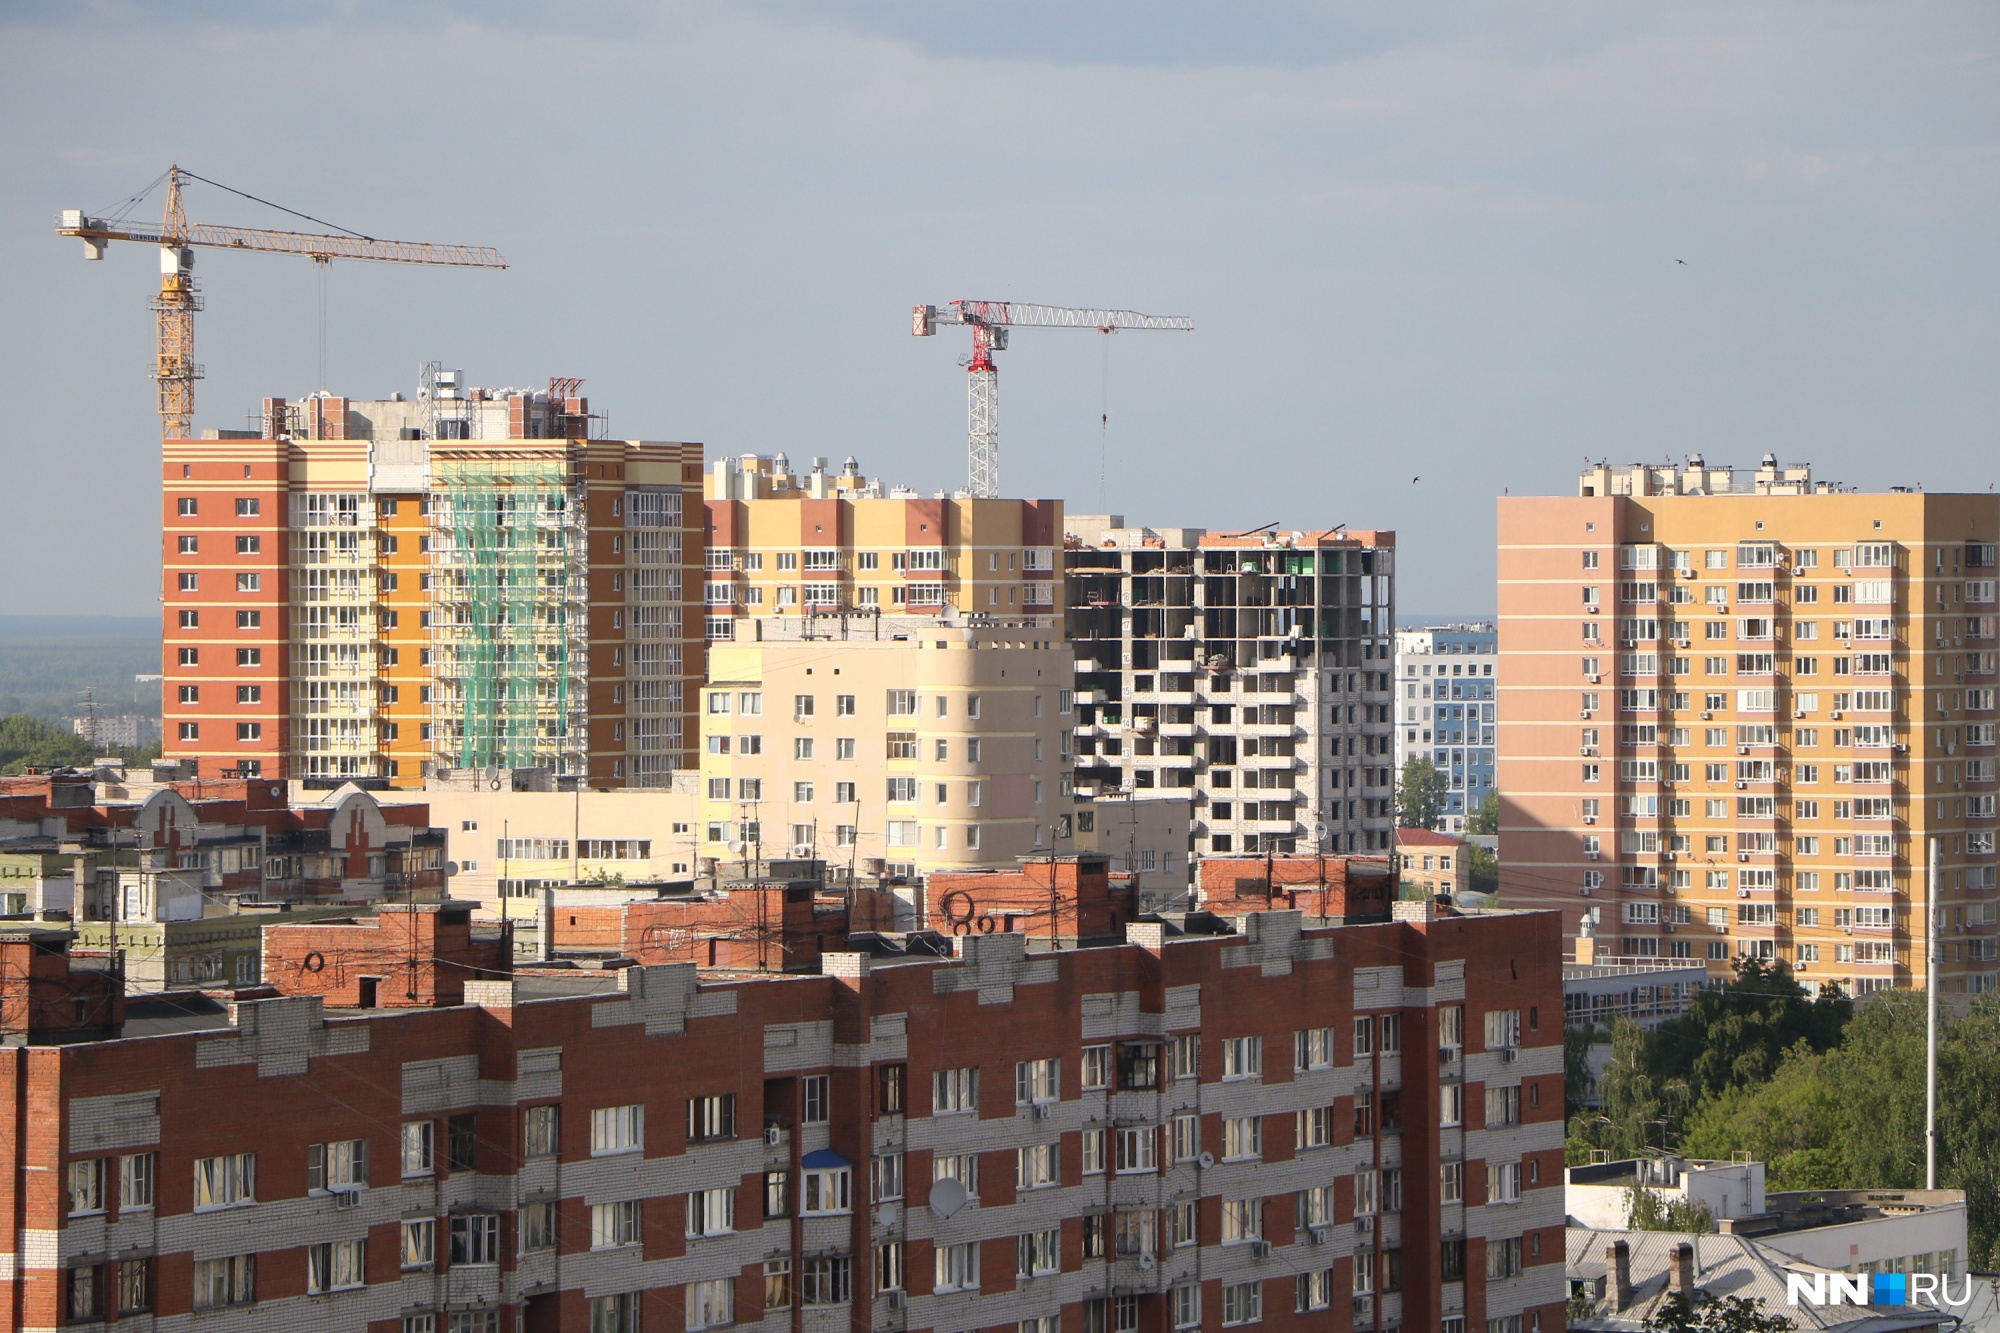 Нижегородские депутаты предложили запрет ремонта квартир по вечерам